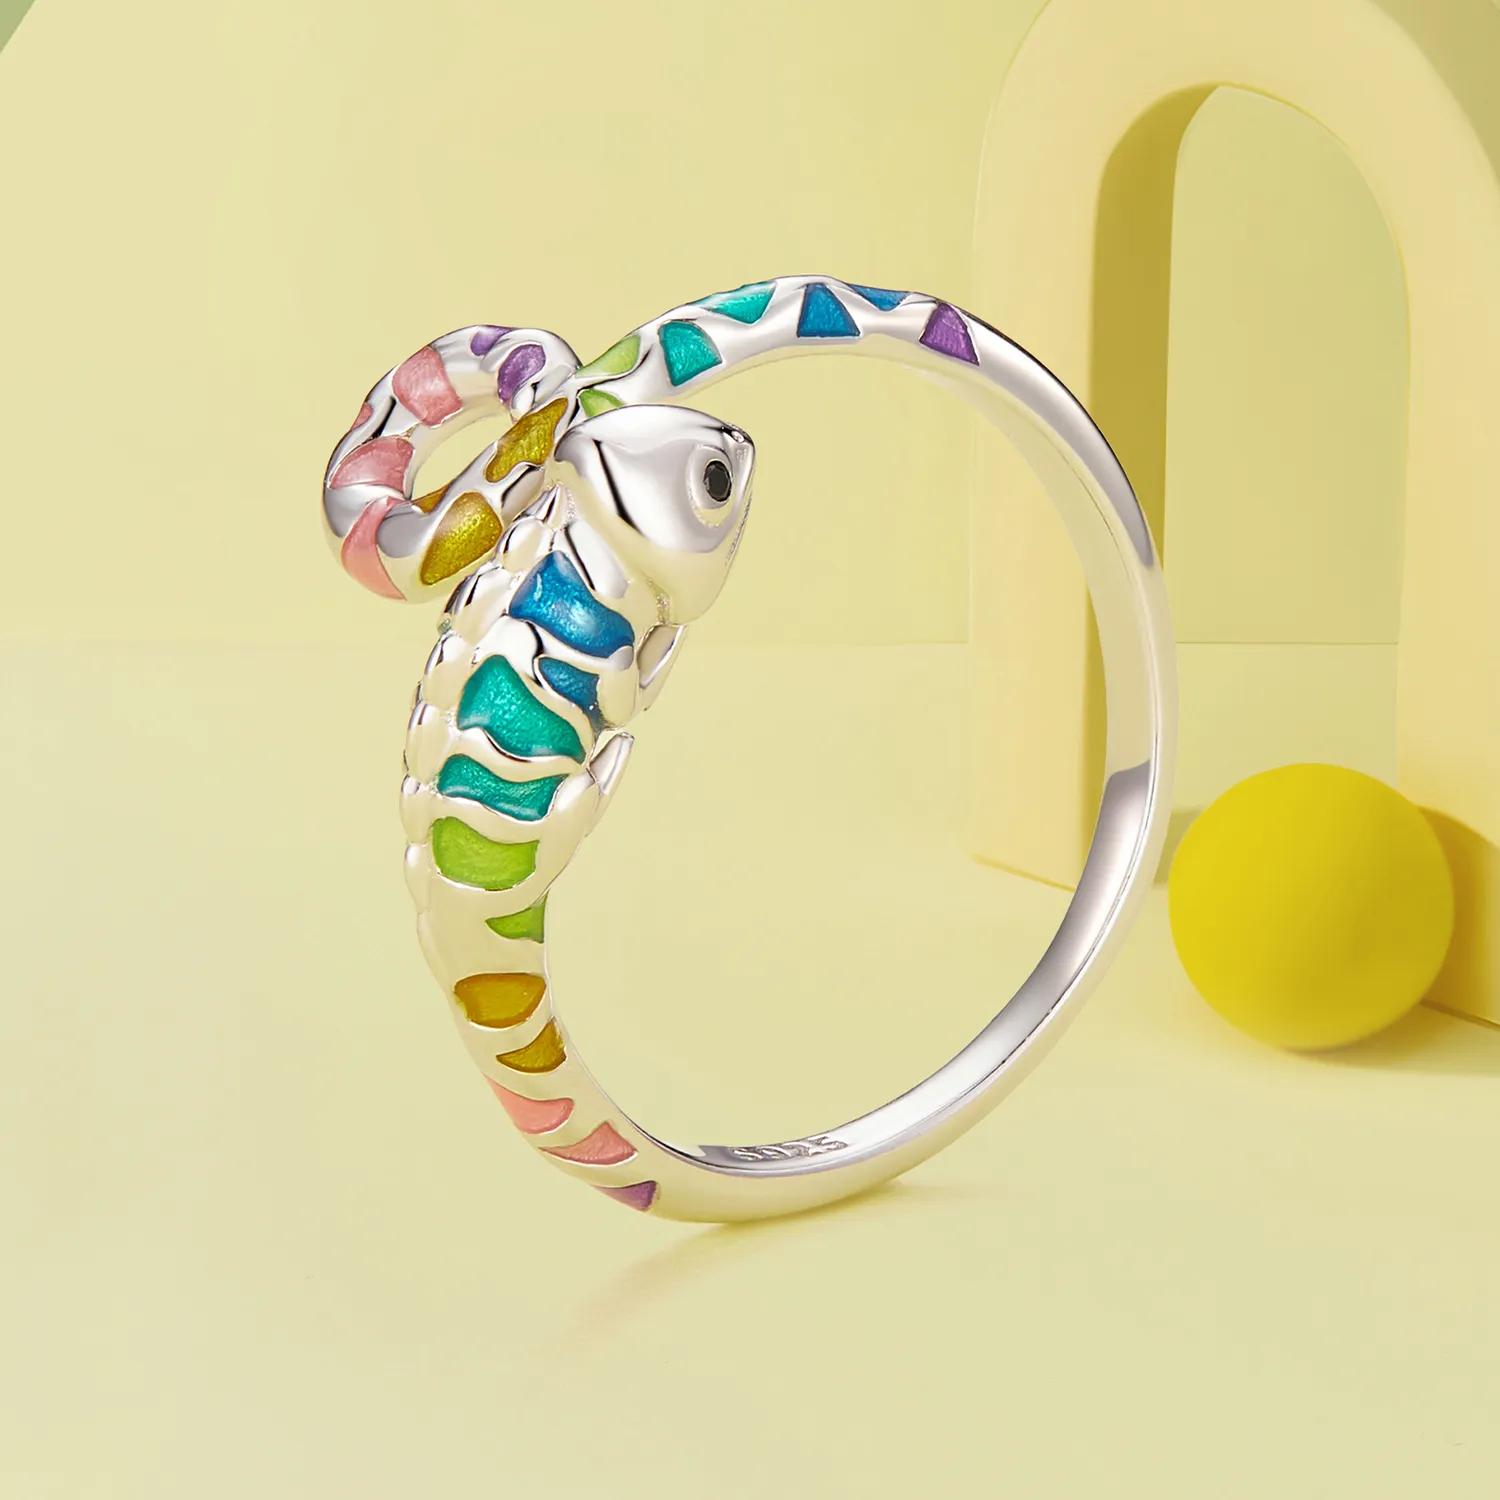 Pandora Style Chameleon Open Ring - BSR475-E